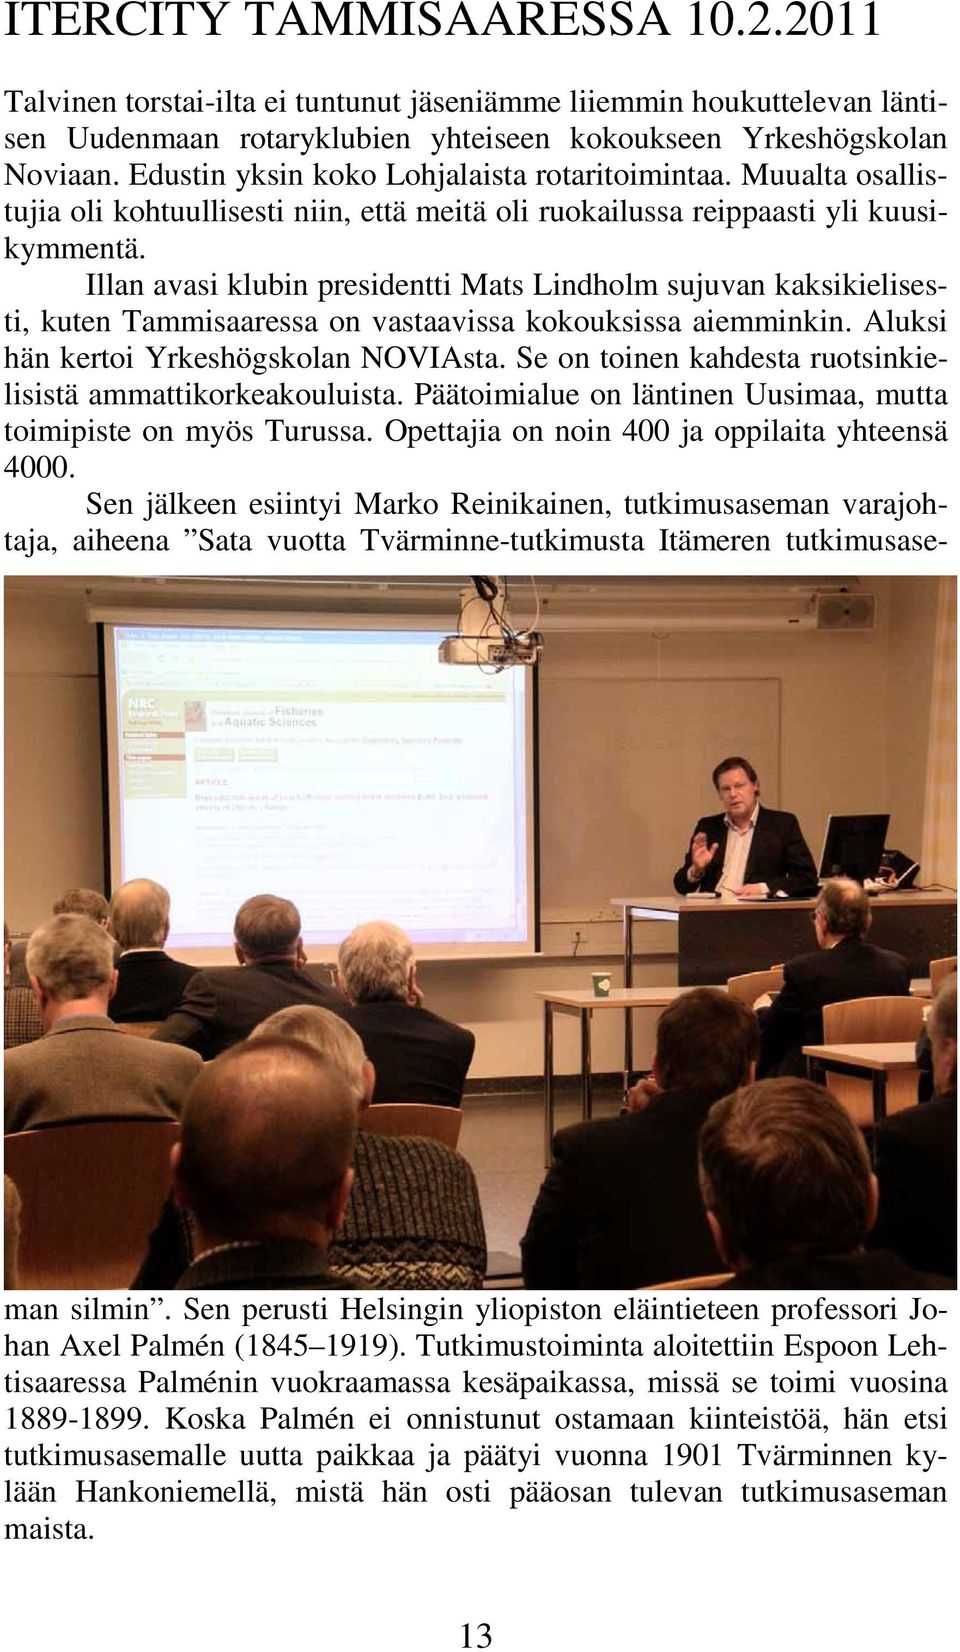 Illan avasi klubin presidentti Mats Lindholm sujuvan kaksikielisesti, kuten Tammisaaressa on vastaavissa kokouksissa aiemminkin. Aluksi hän kertoi Yrkeshögskolan NOVIAsta.